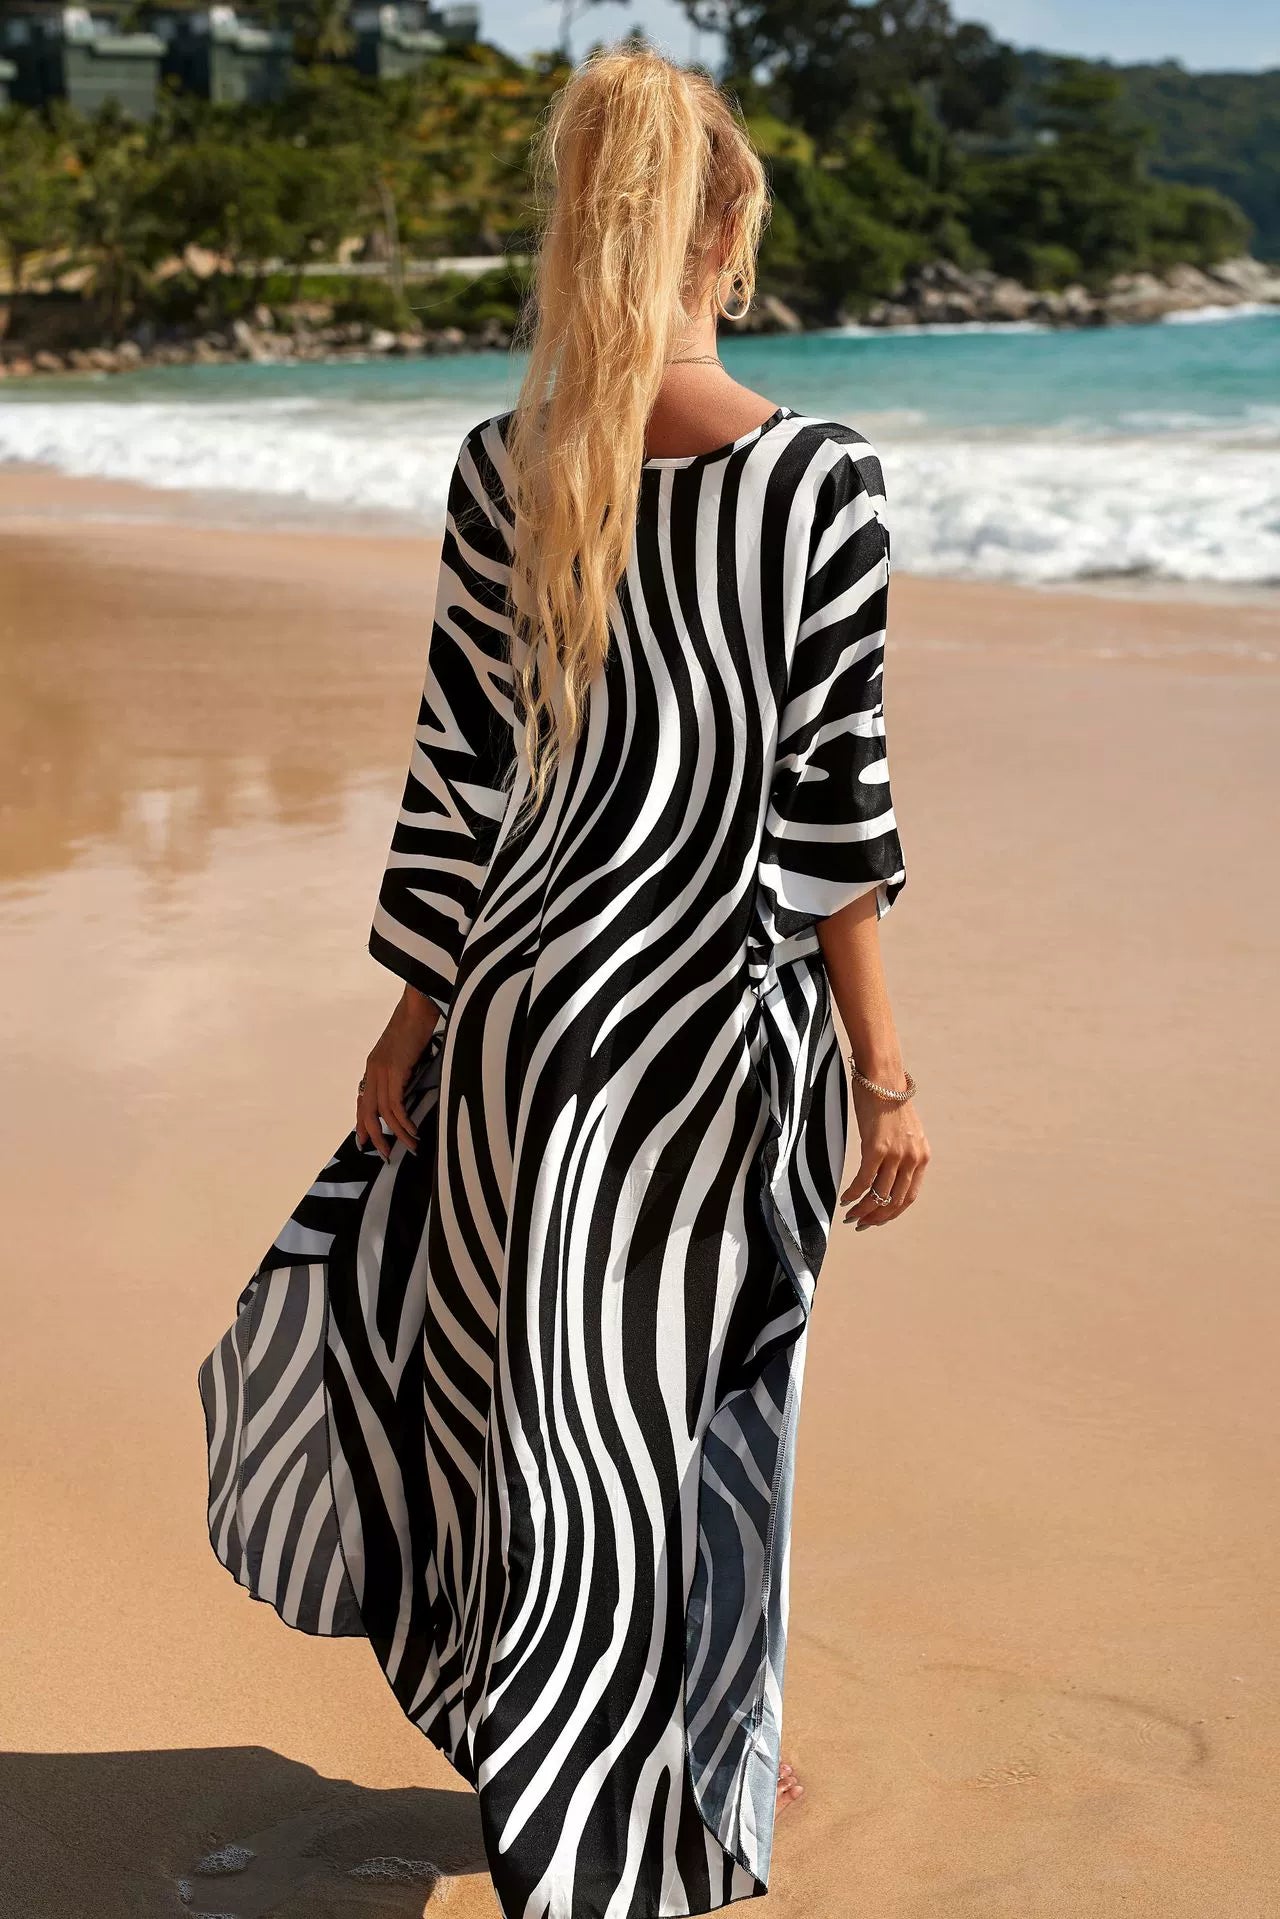 فستان طويل للعطلات على الشاطئ بخطوط الحمار الوحشي وطباعة كلاسيكية لتغطية الشاطئ